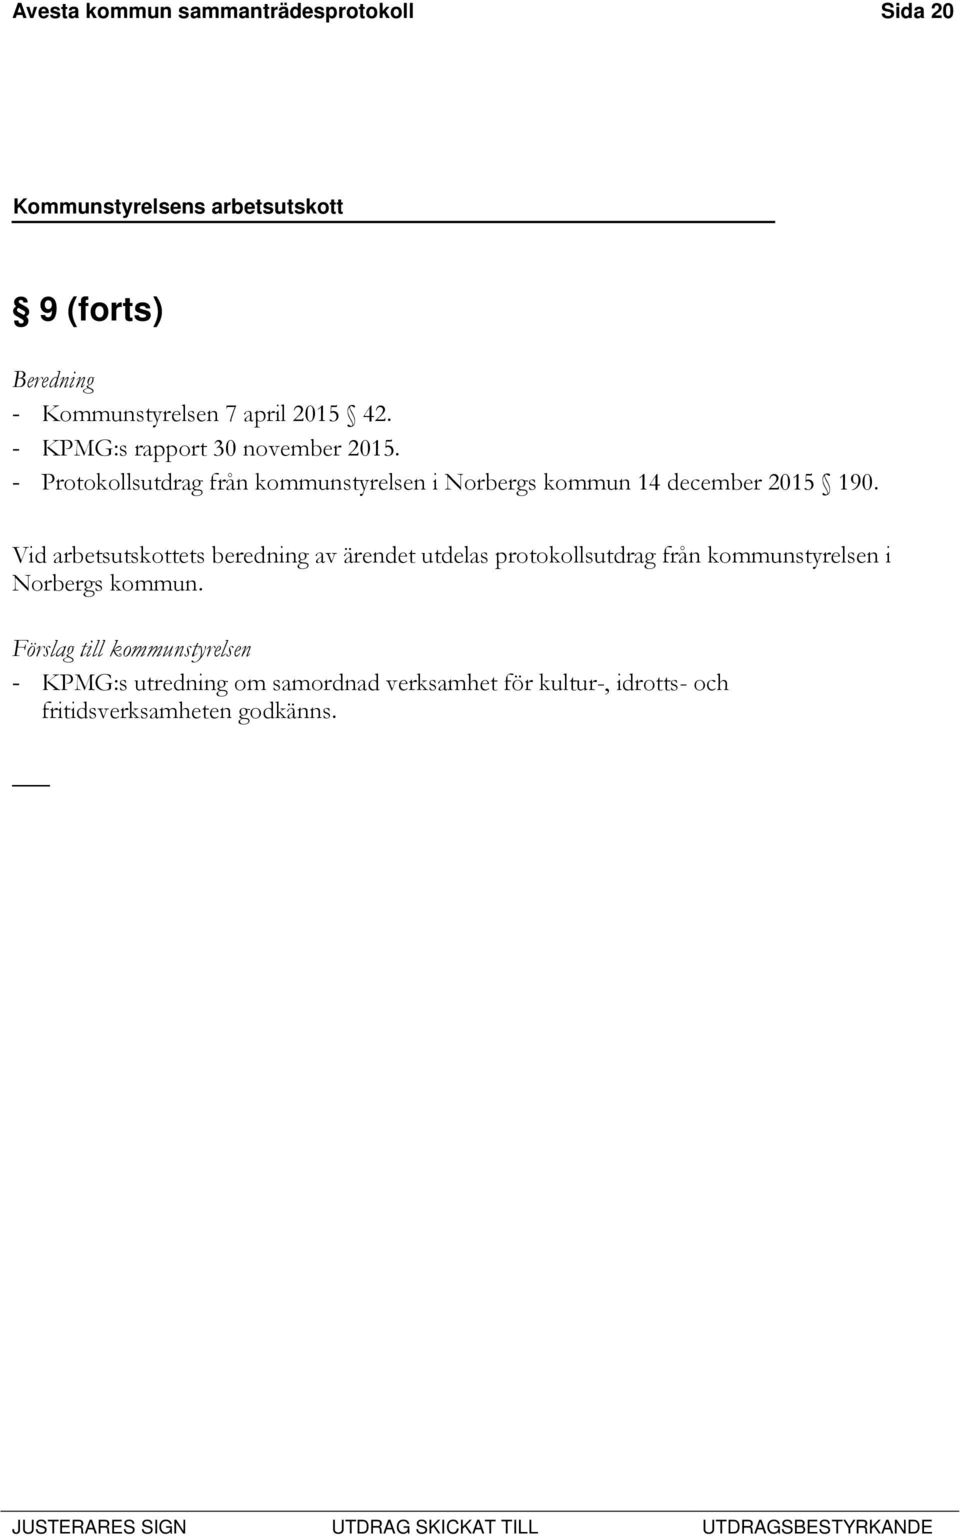 - Protokollsutdrag från kommunstyrelsen i Norbergs kommun 14 december 2015 190.